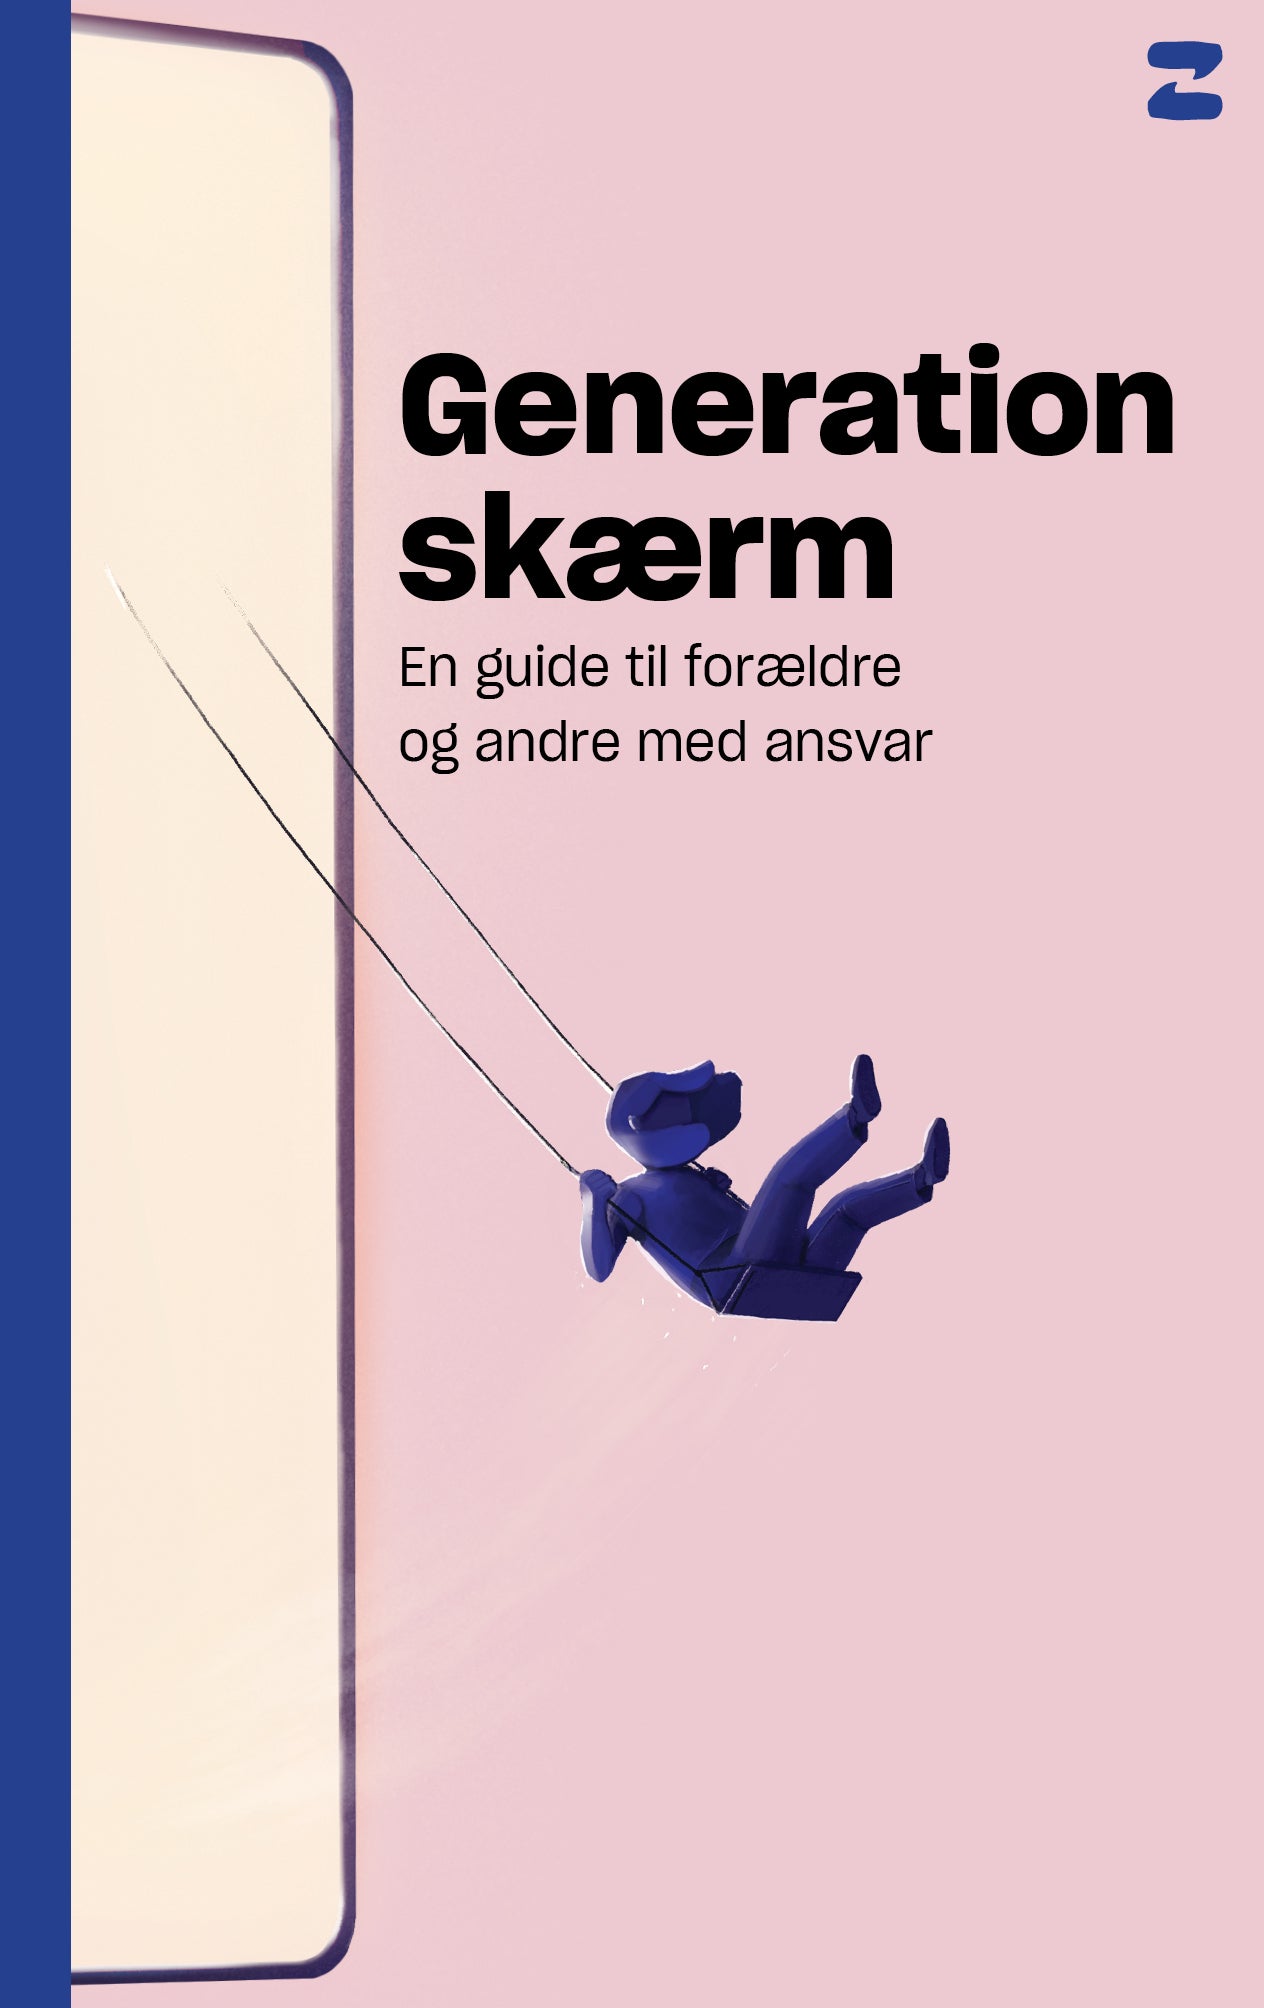 Generation skærm. En guide til forældre og andre med ansvar